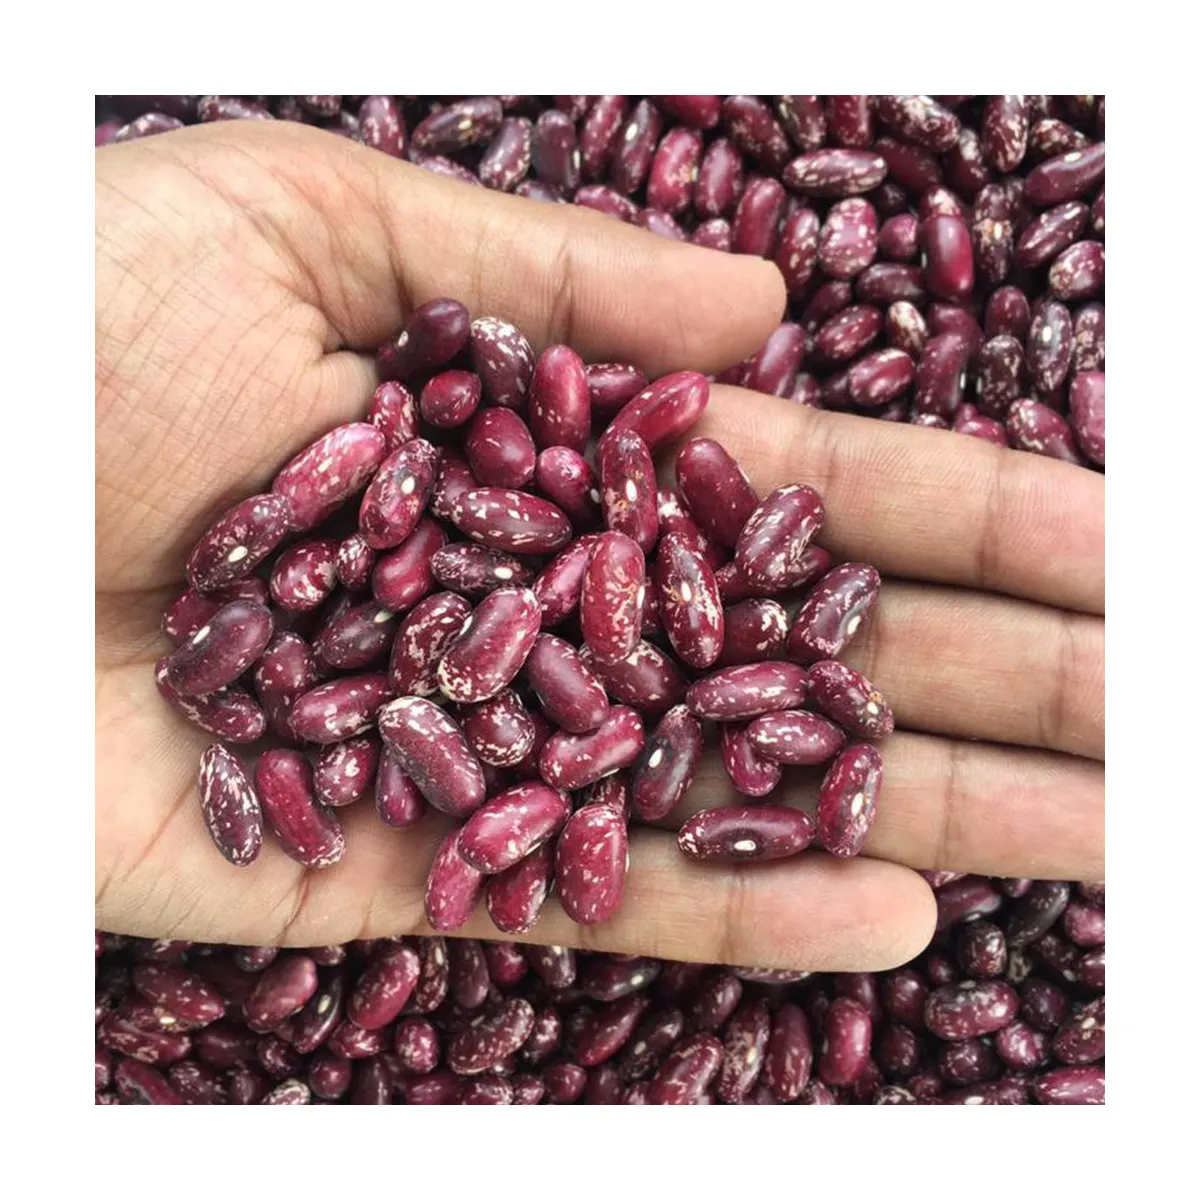 High quality food grade 25 or 50 kg kidney beans natural Uzbekistan product Red speckled kedney beans for food